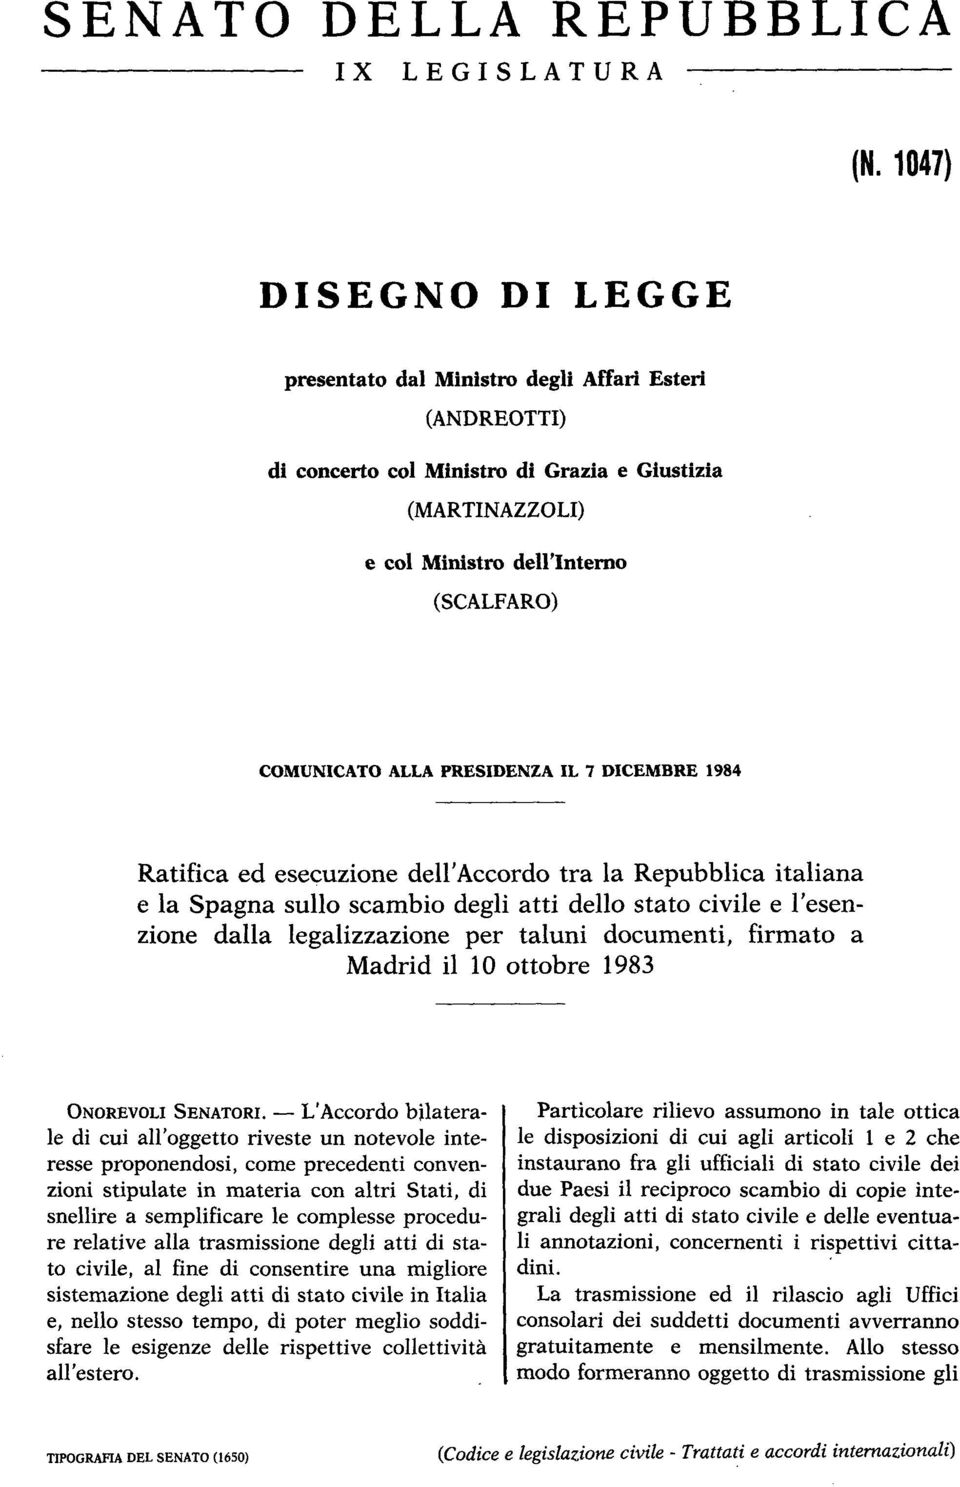 PRESIDENZA IL 7 DICEMBRE 1984 Ratifica ed esecuzione dell'accordo tra la Repubblica italiana e la Spagna sullo scambio degli atti dello stato civile e l'esenzione dalla legalizzazione per taluni